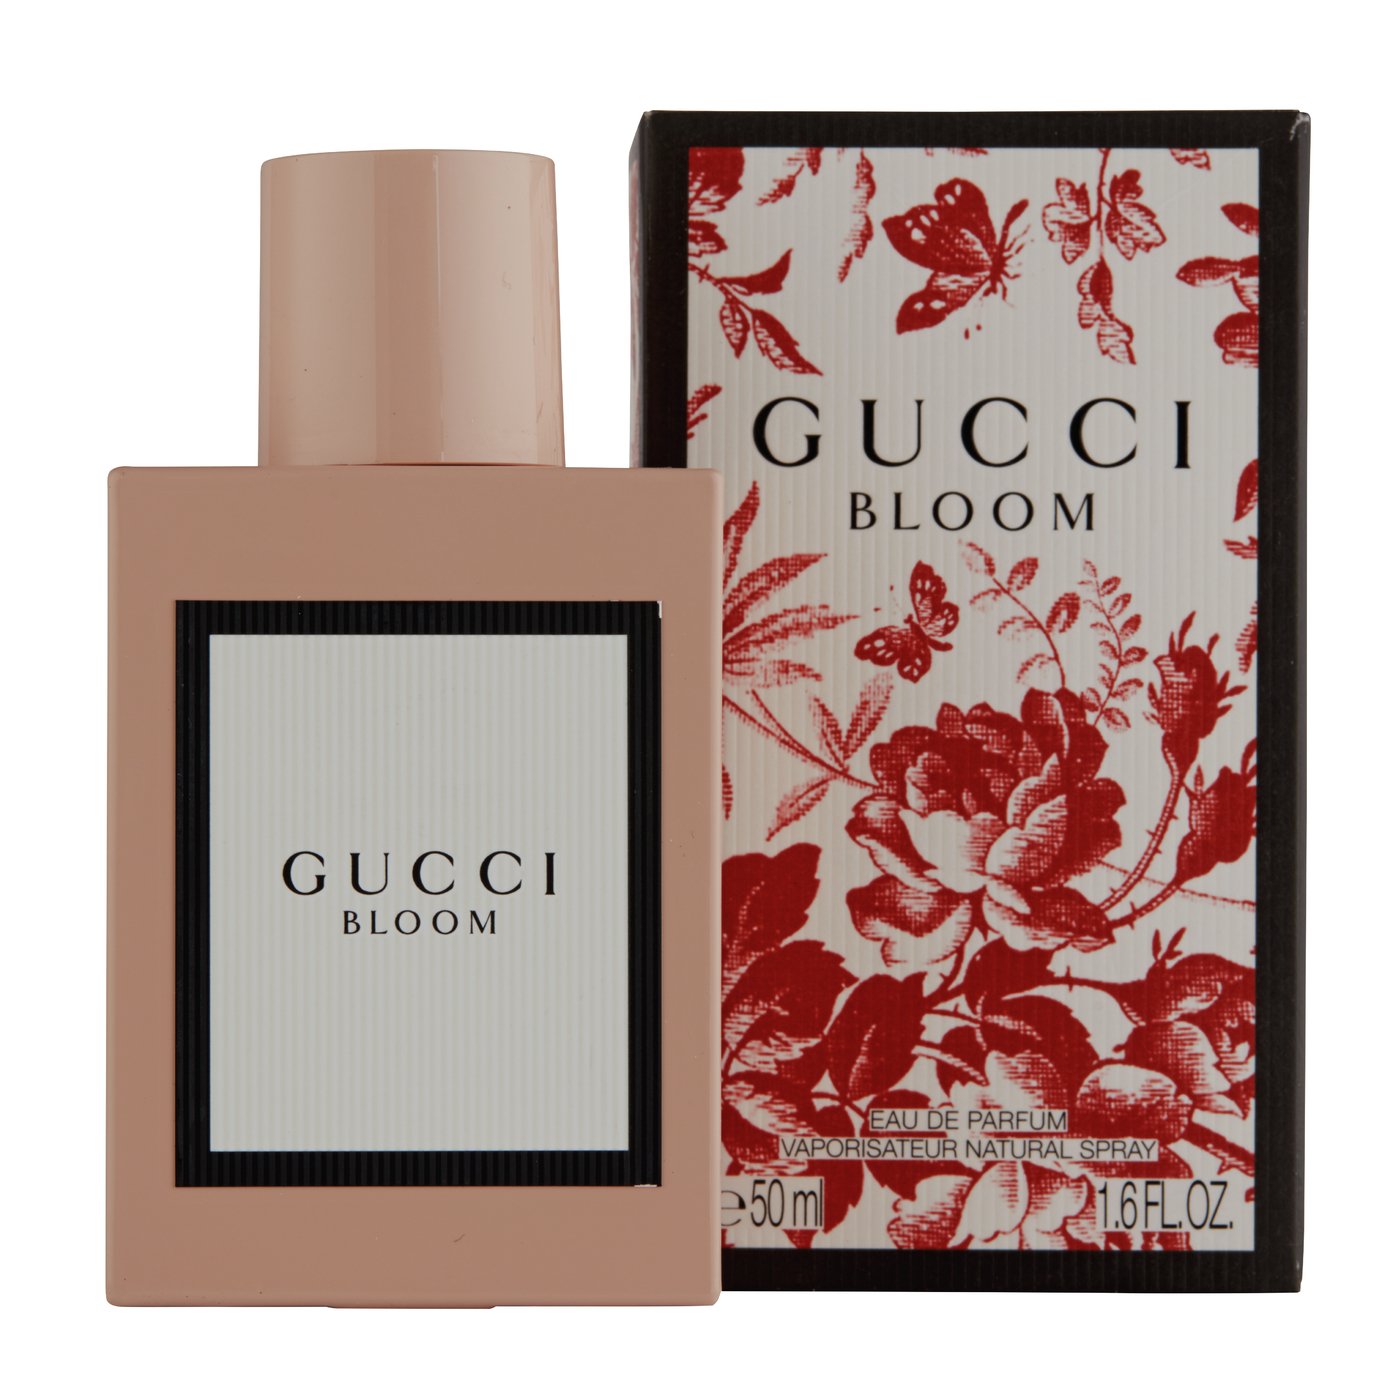 Gucci Bloom for Women Eau de Parfum - 50ml